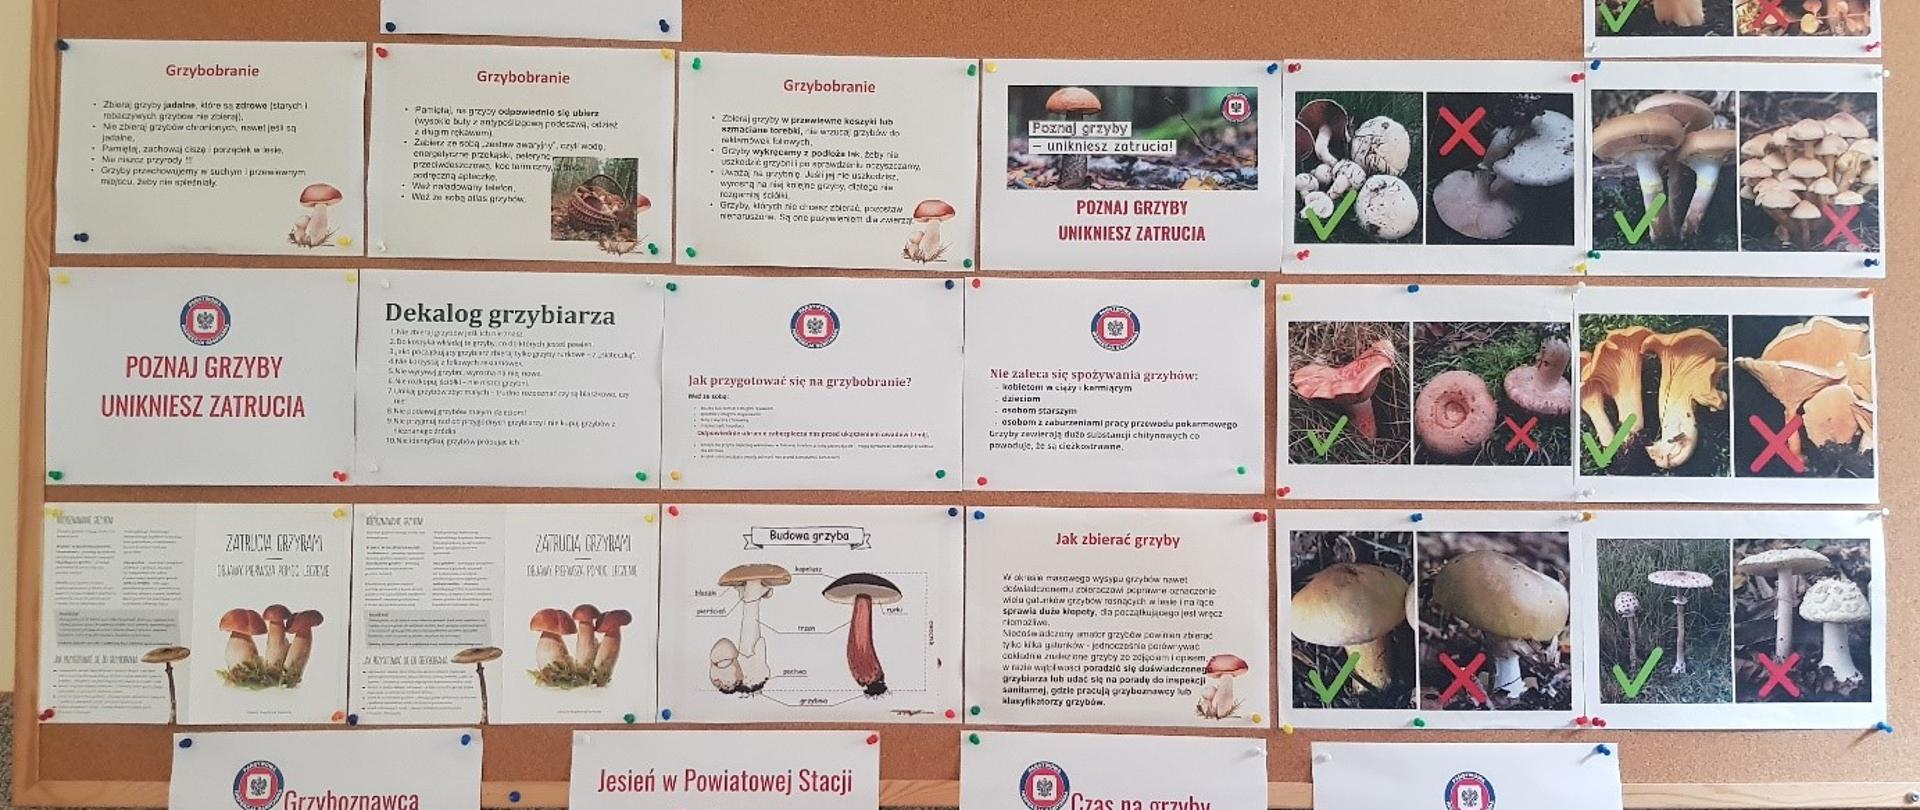 Wystawa przedstawia tablicę informacyjną „Poznaj grzyby unikniesz zatrucia” 